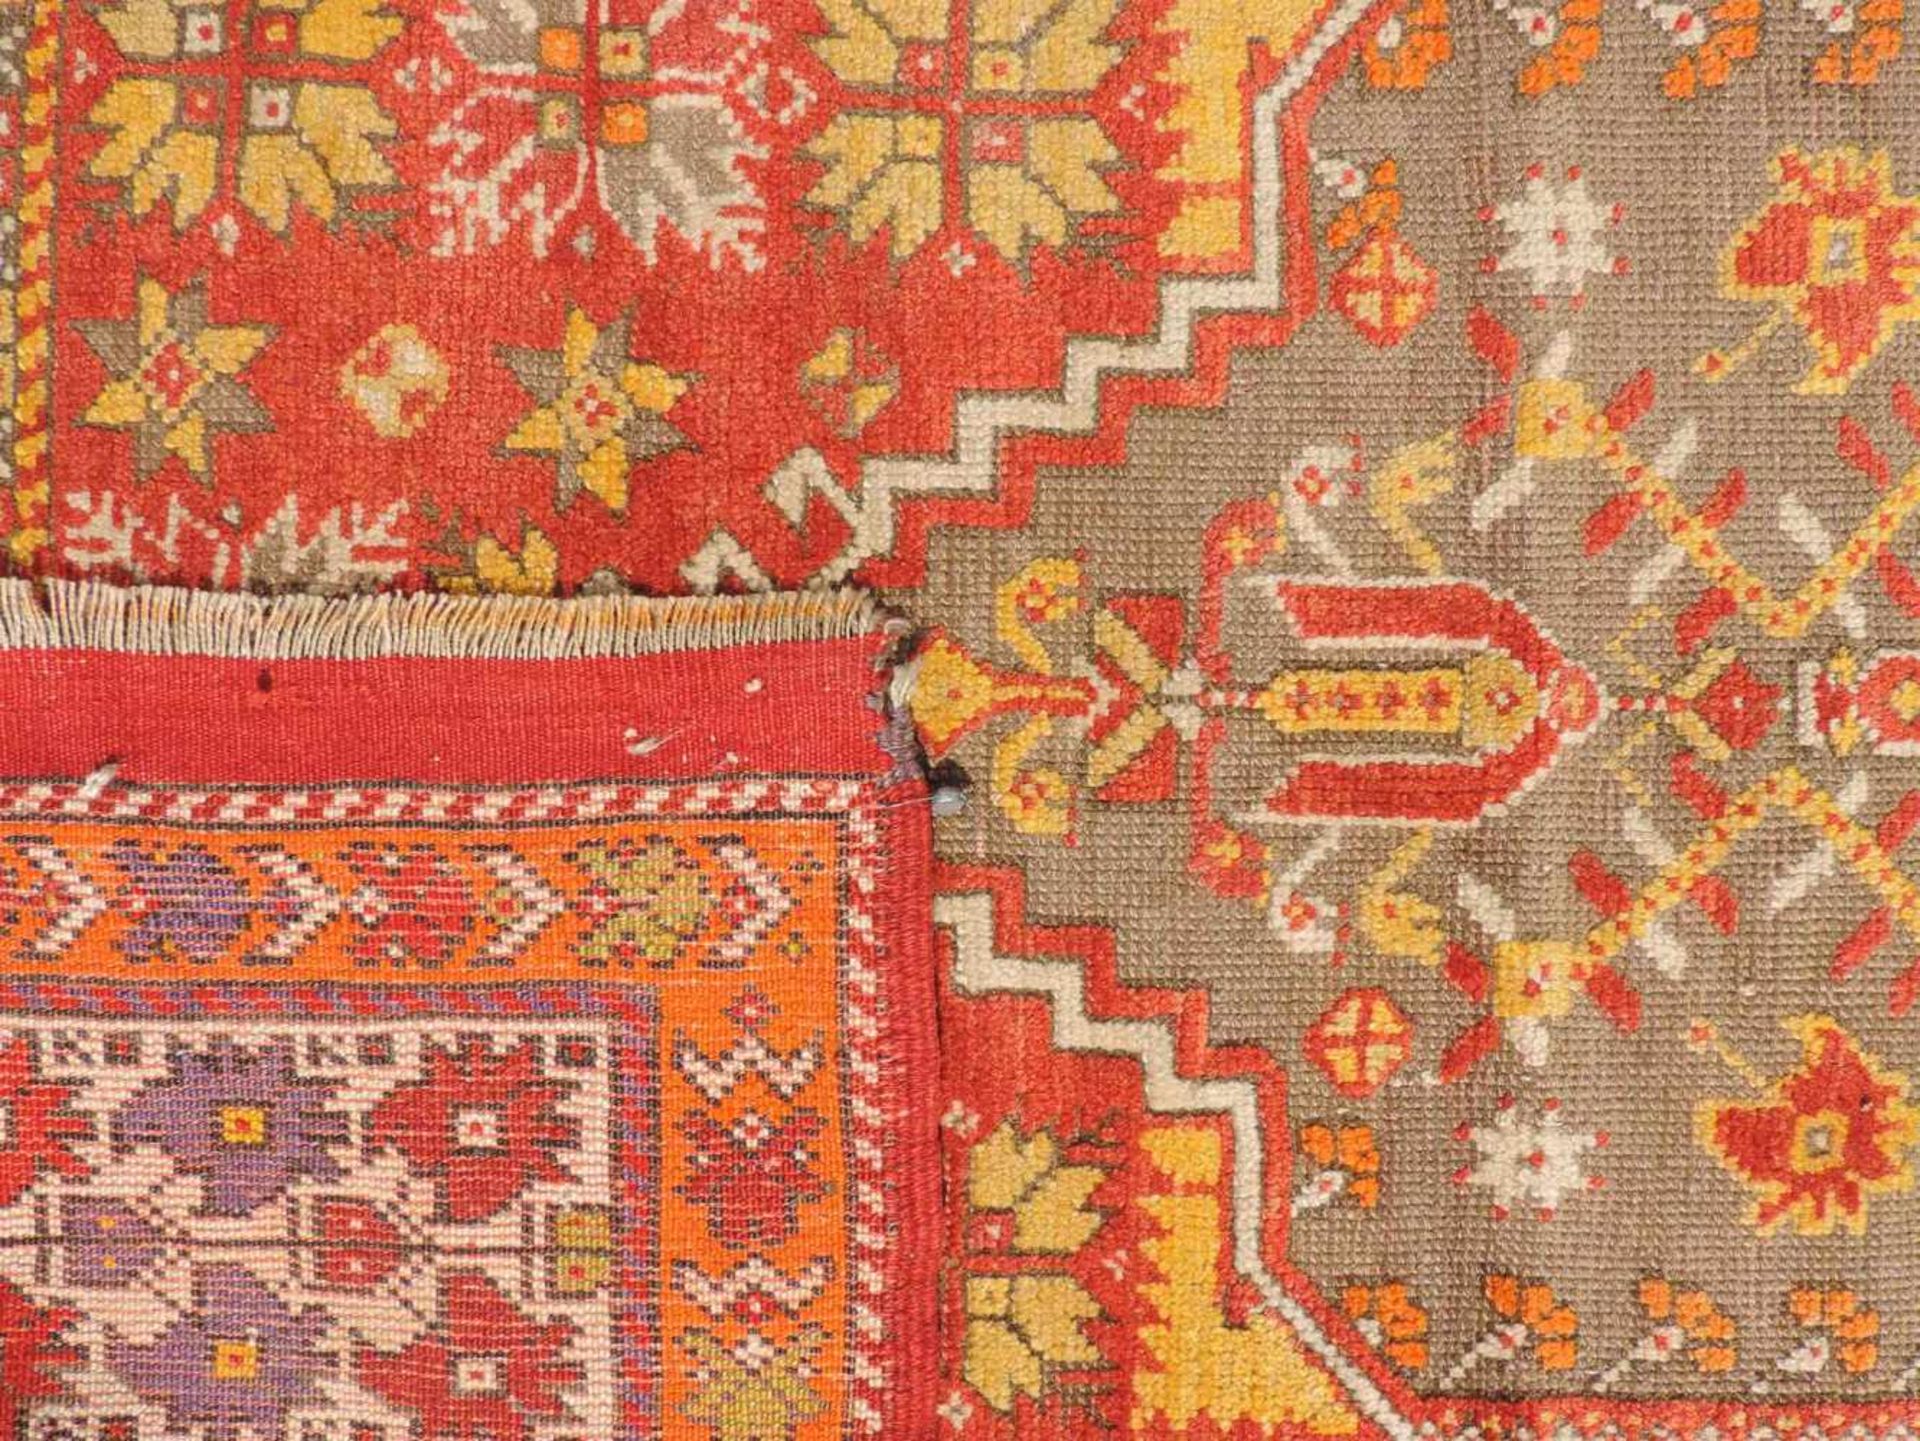 Mucur Gebetsteppich. Anatolien. Türkei. Antik, um 1870. 155 cm x 114 cm. Handgeknüpft. Wolle auf - Image 5 of 6